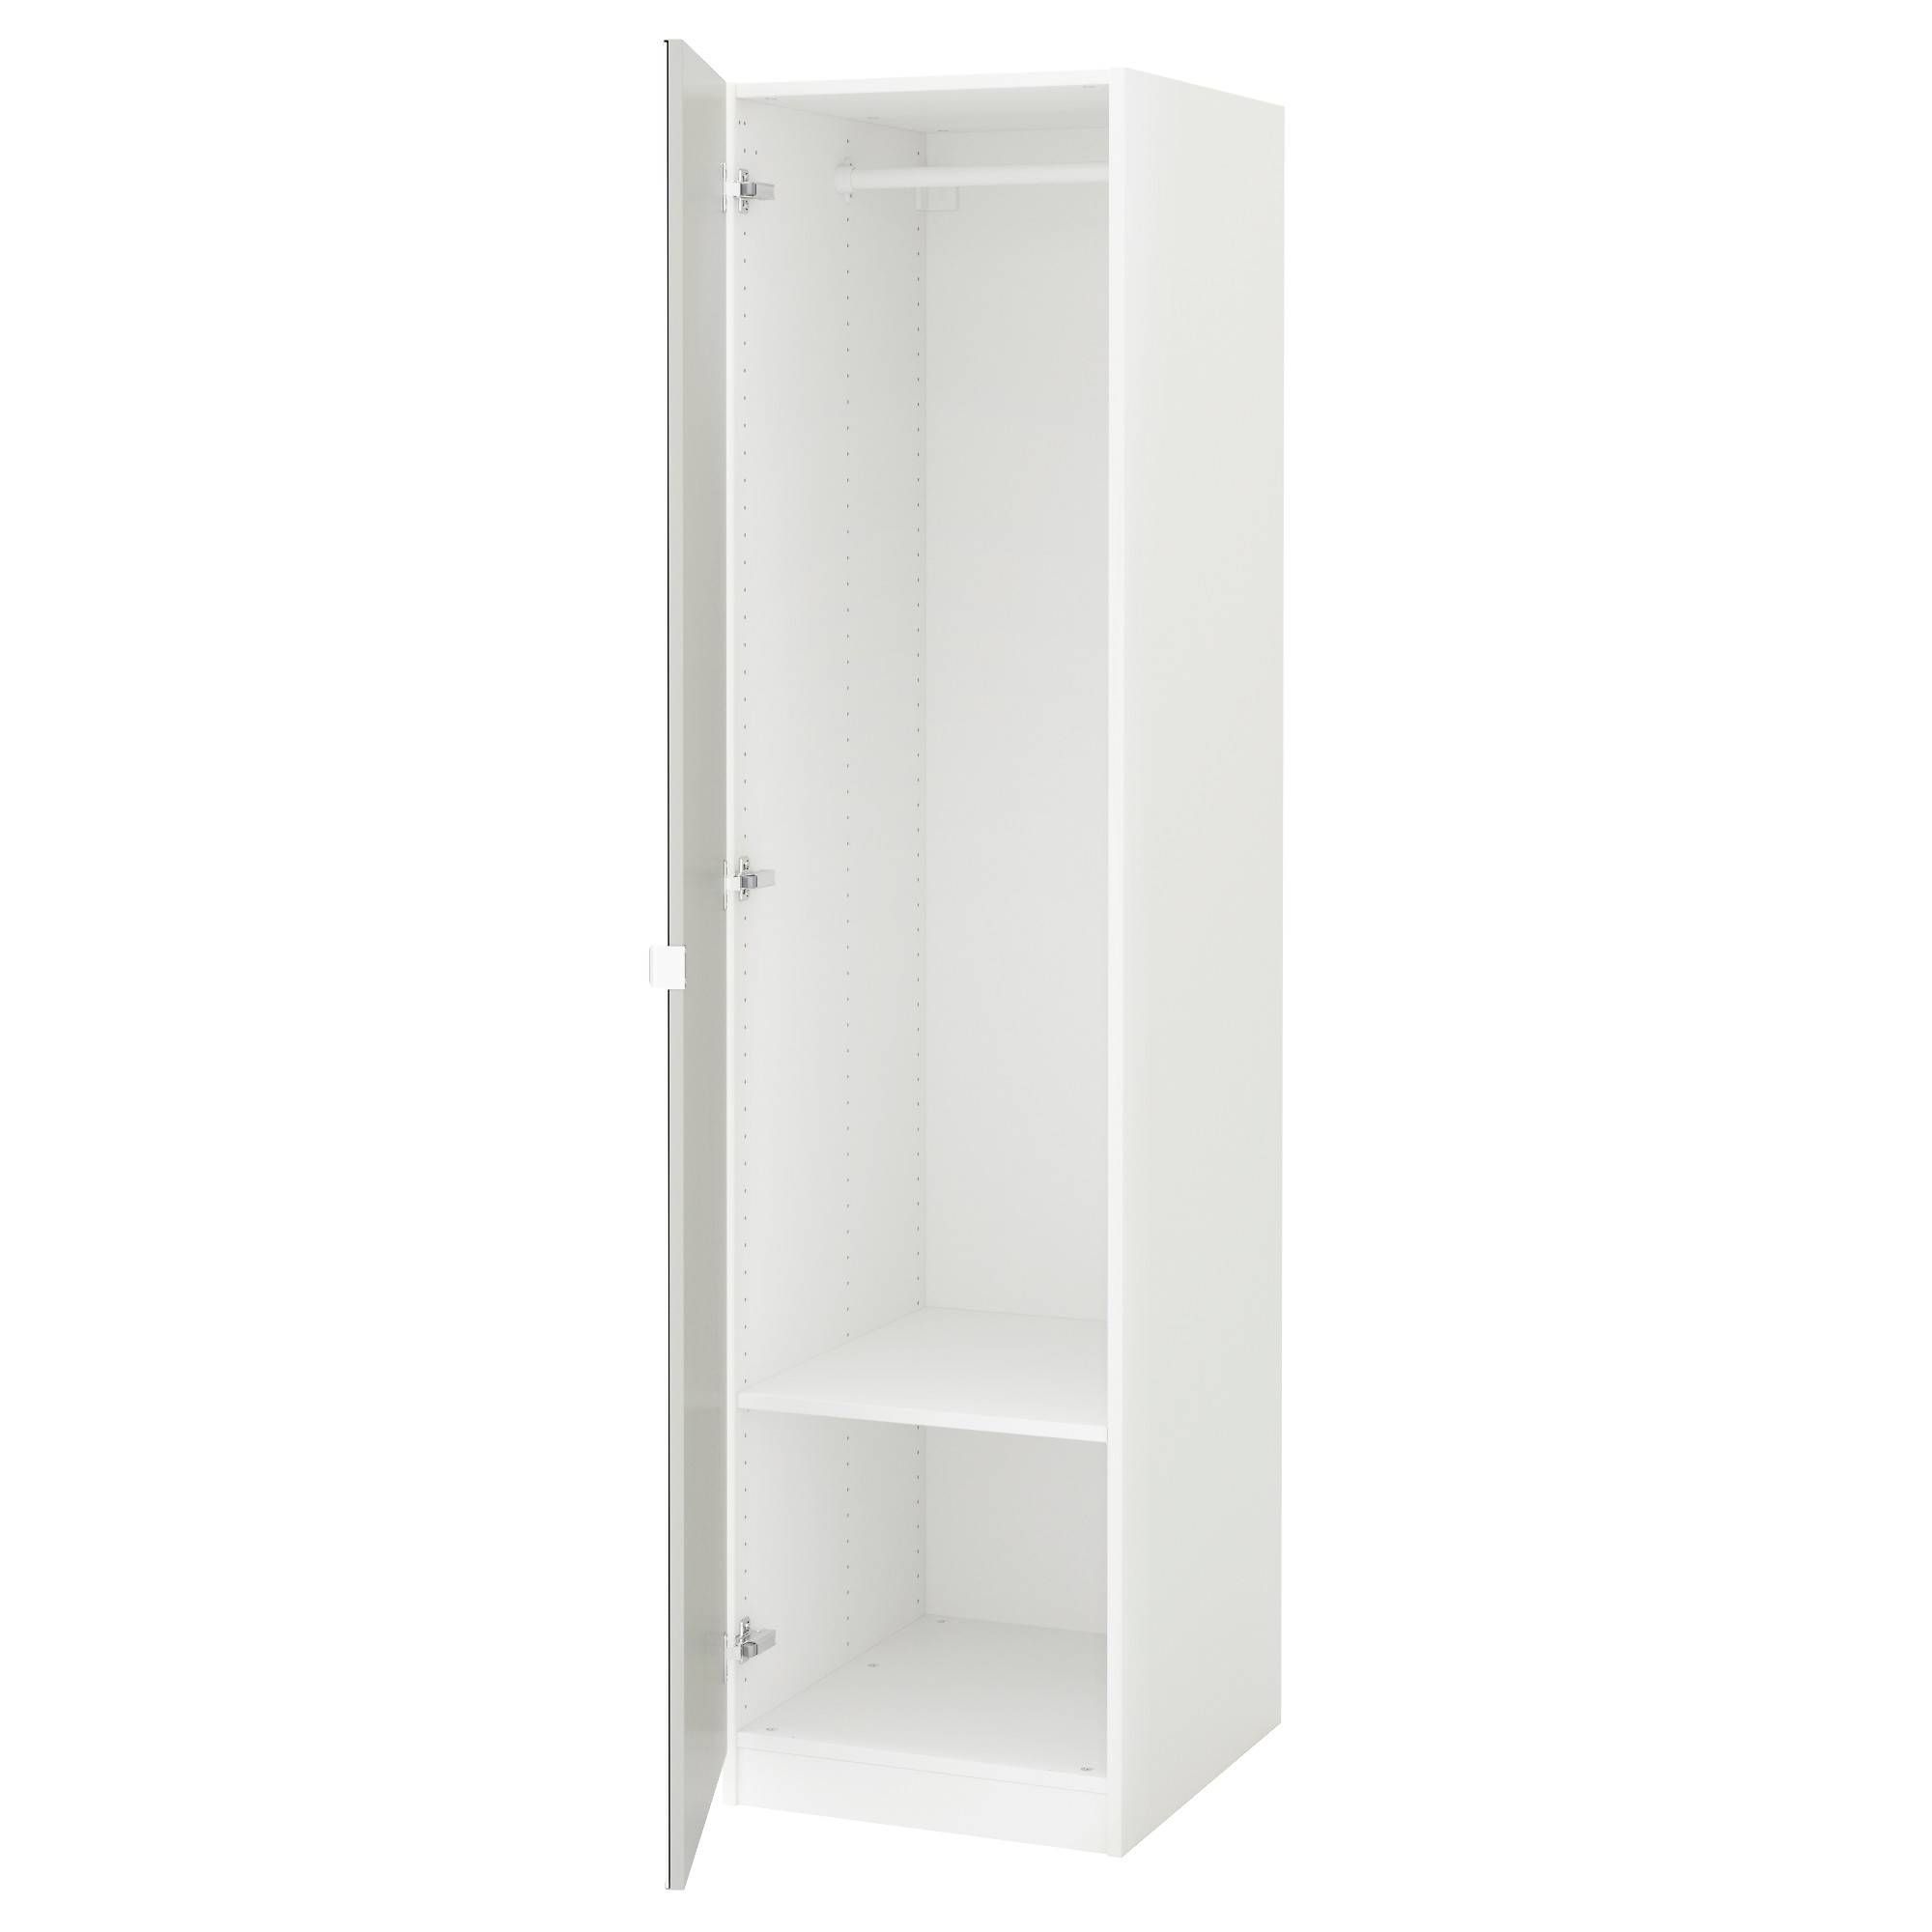 Pax Wardrobe White/vikedal Mirror Glass 50x60x201 Cm – Ikea With Regard To Single White Wardrobes With Mirror (Photo 2 of 15)